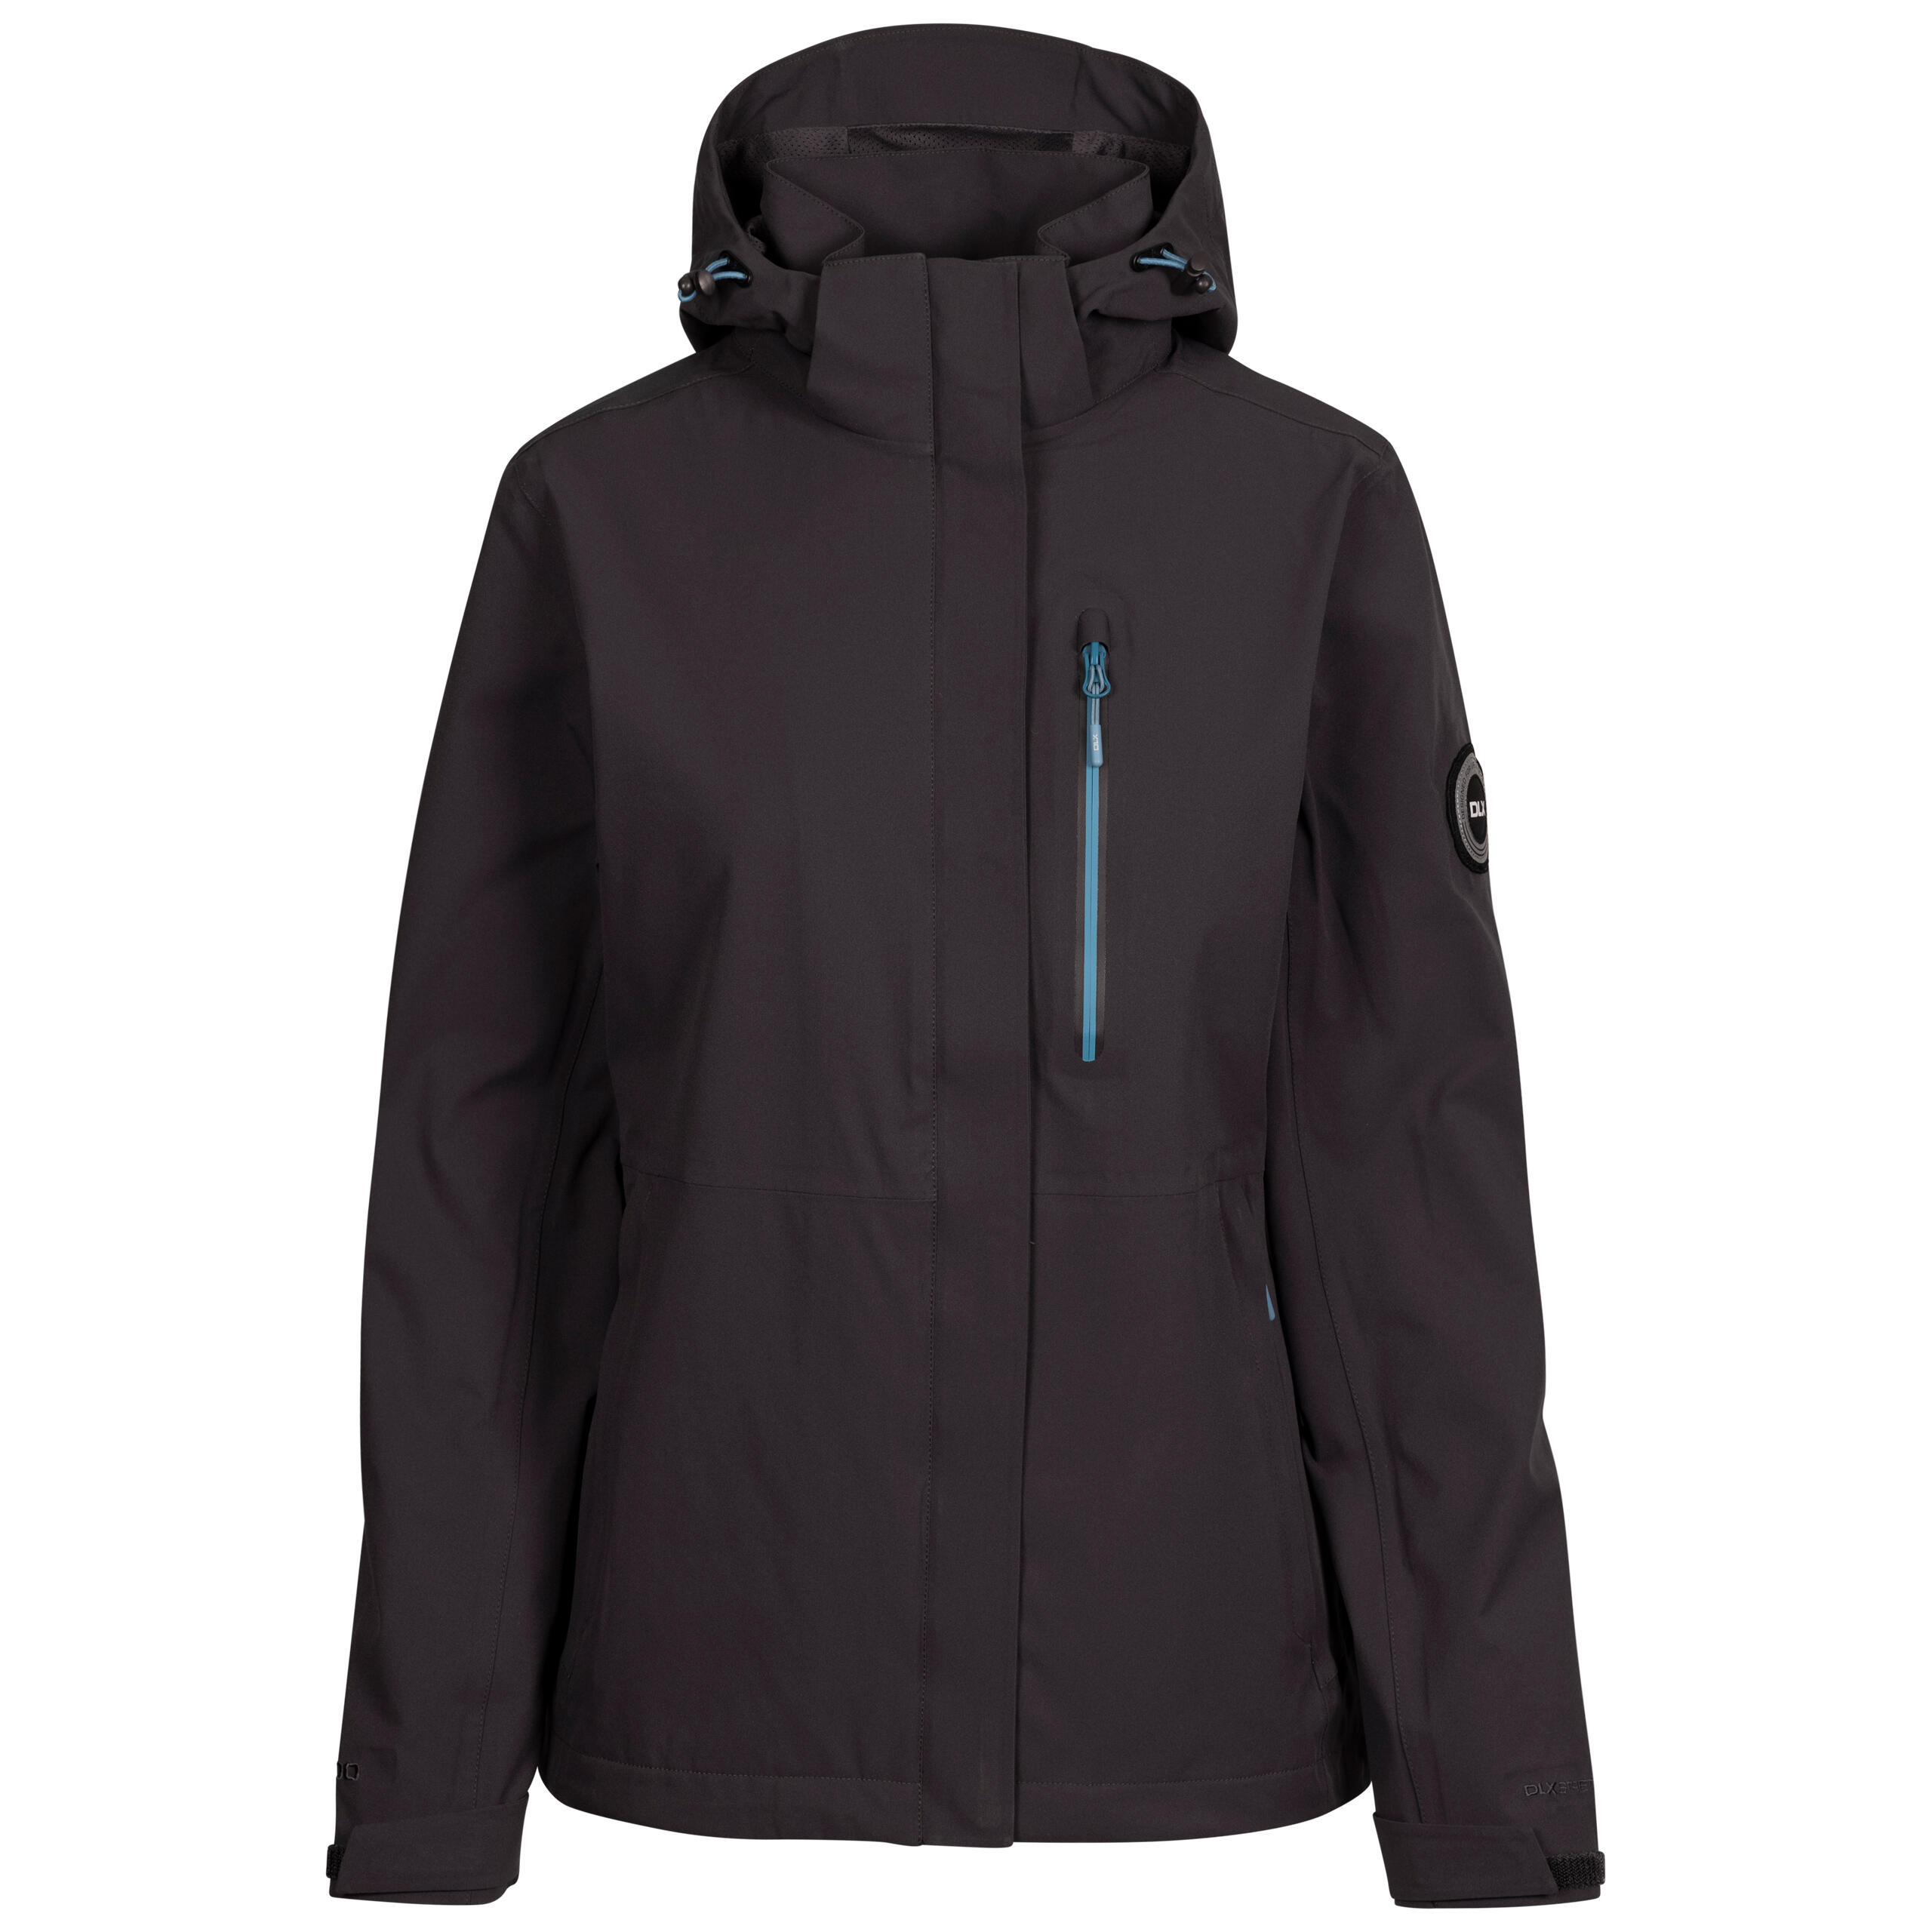 DLX Womens Waterproof Jacket With Zip Off Hood, Pockets, Adjustable Cuff Katya